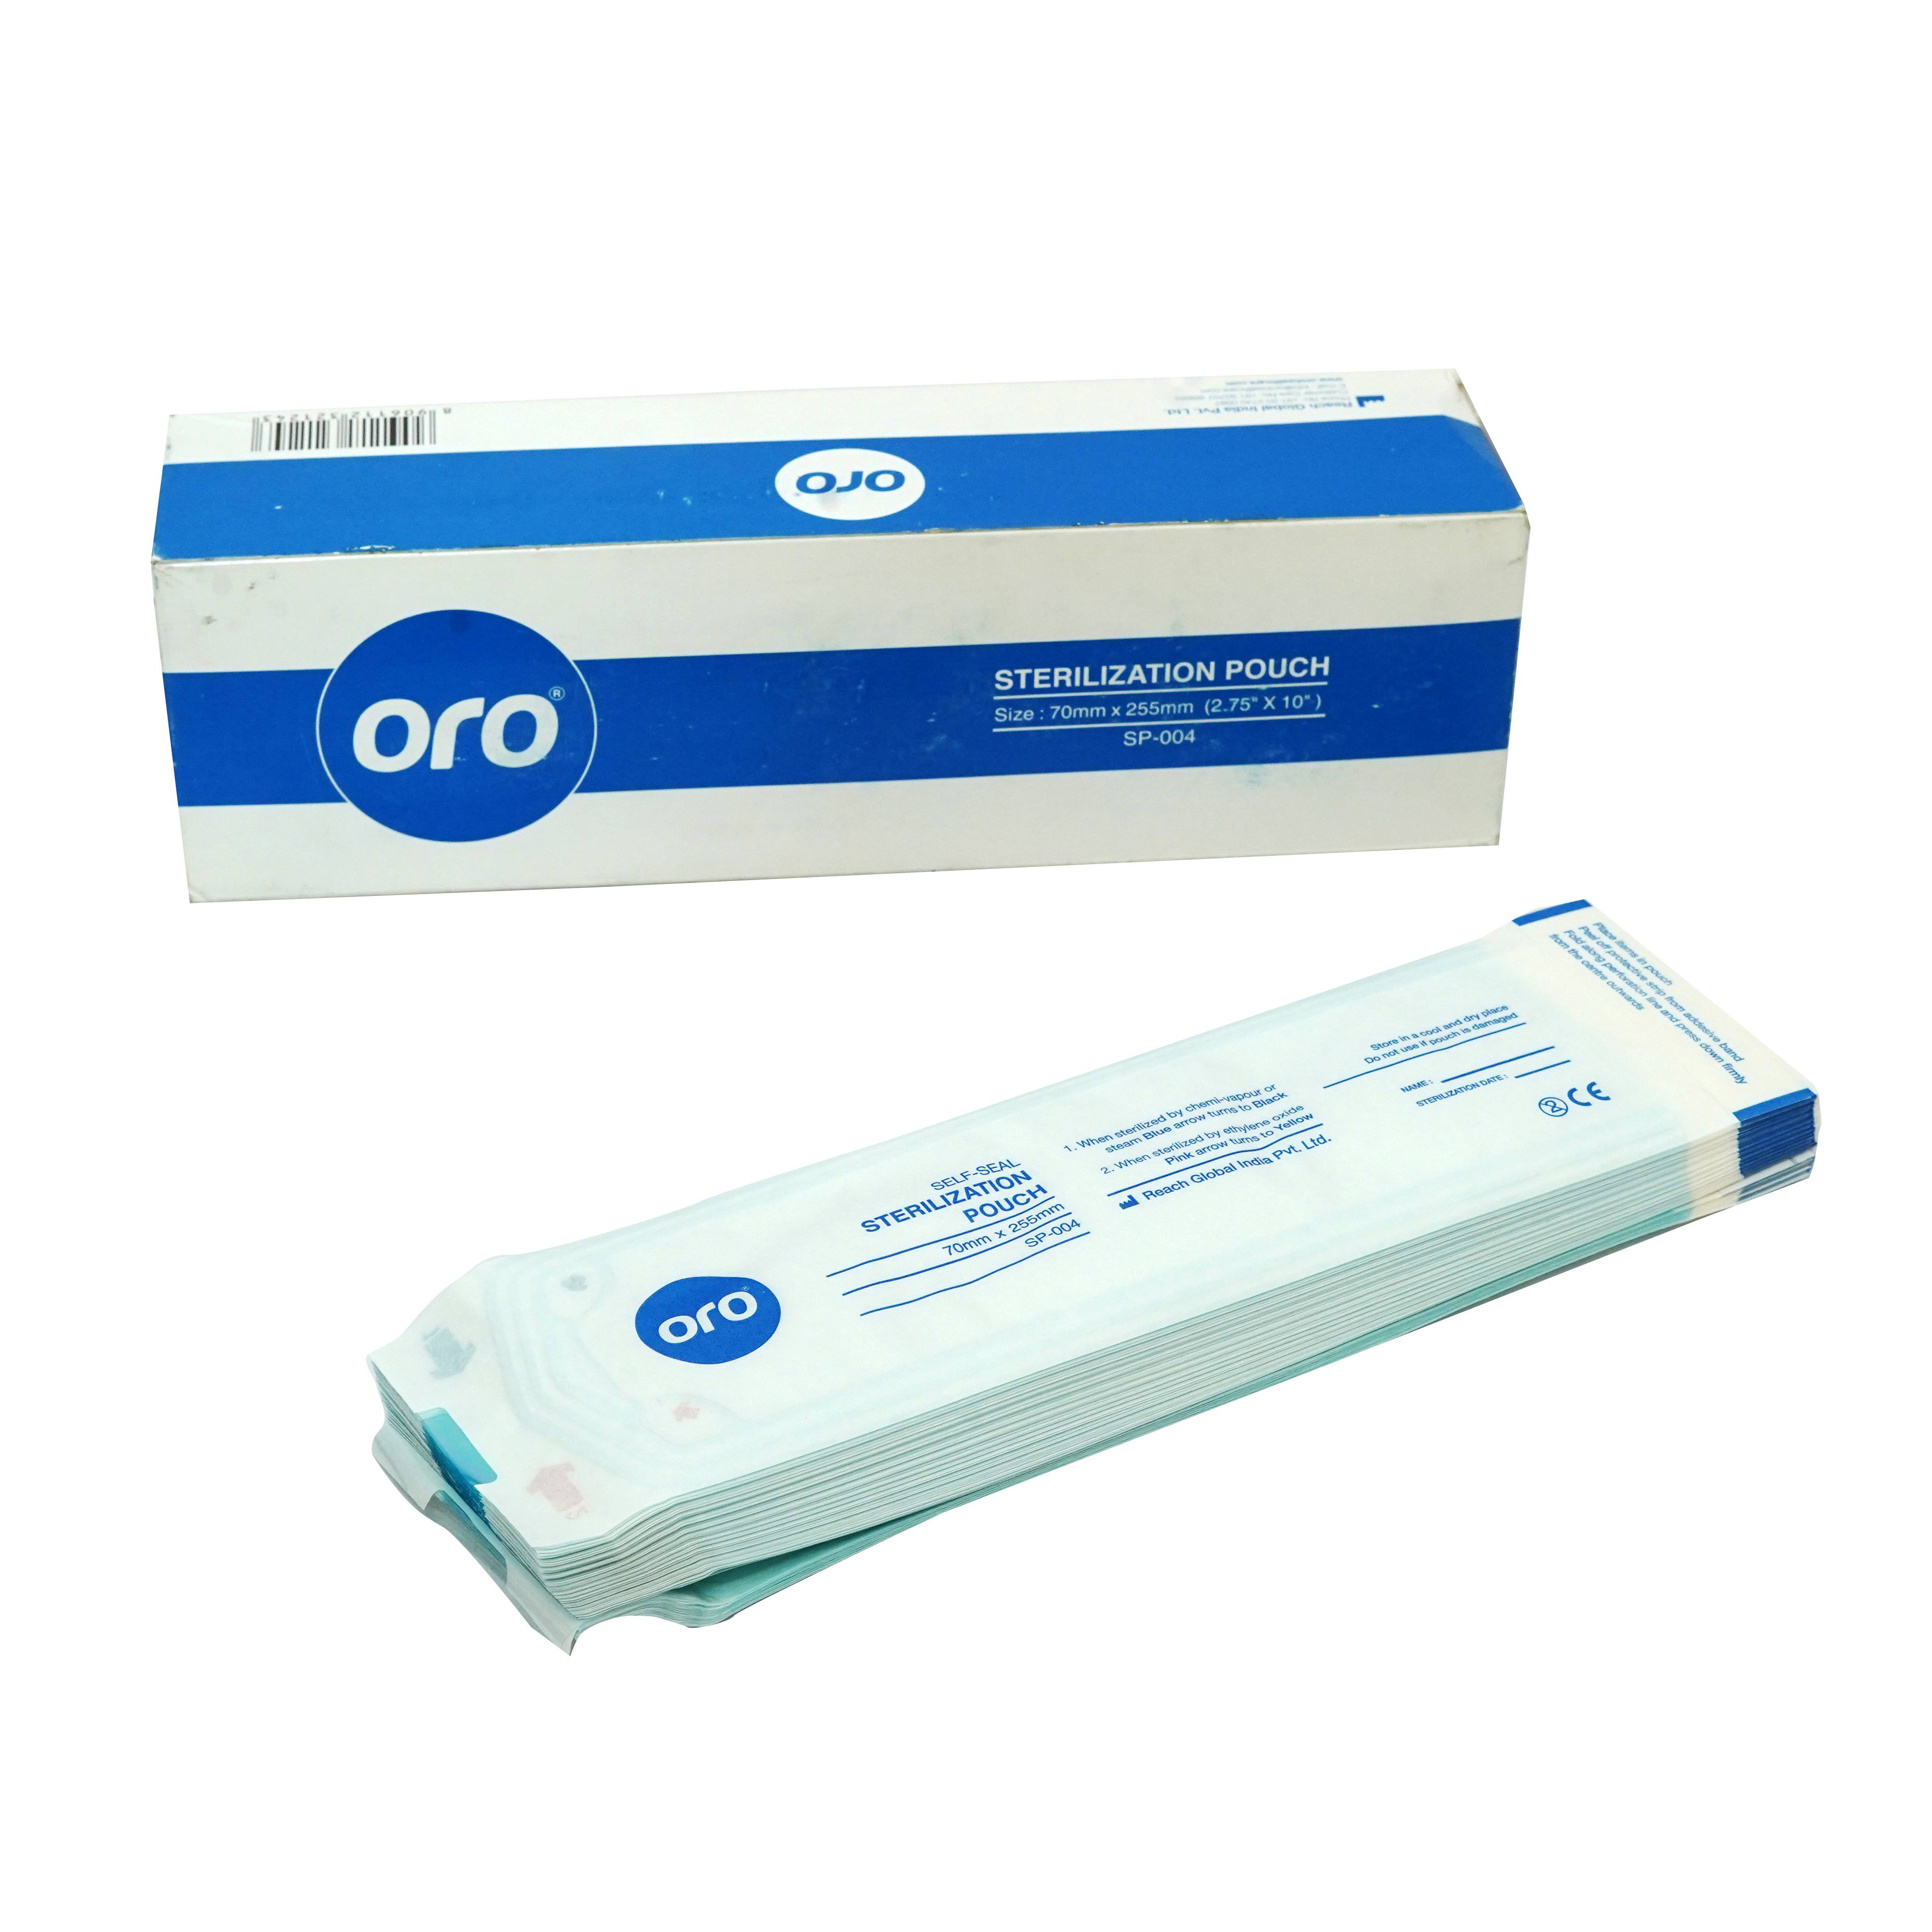 ORO Sterilization Pouches 70 X 255mm